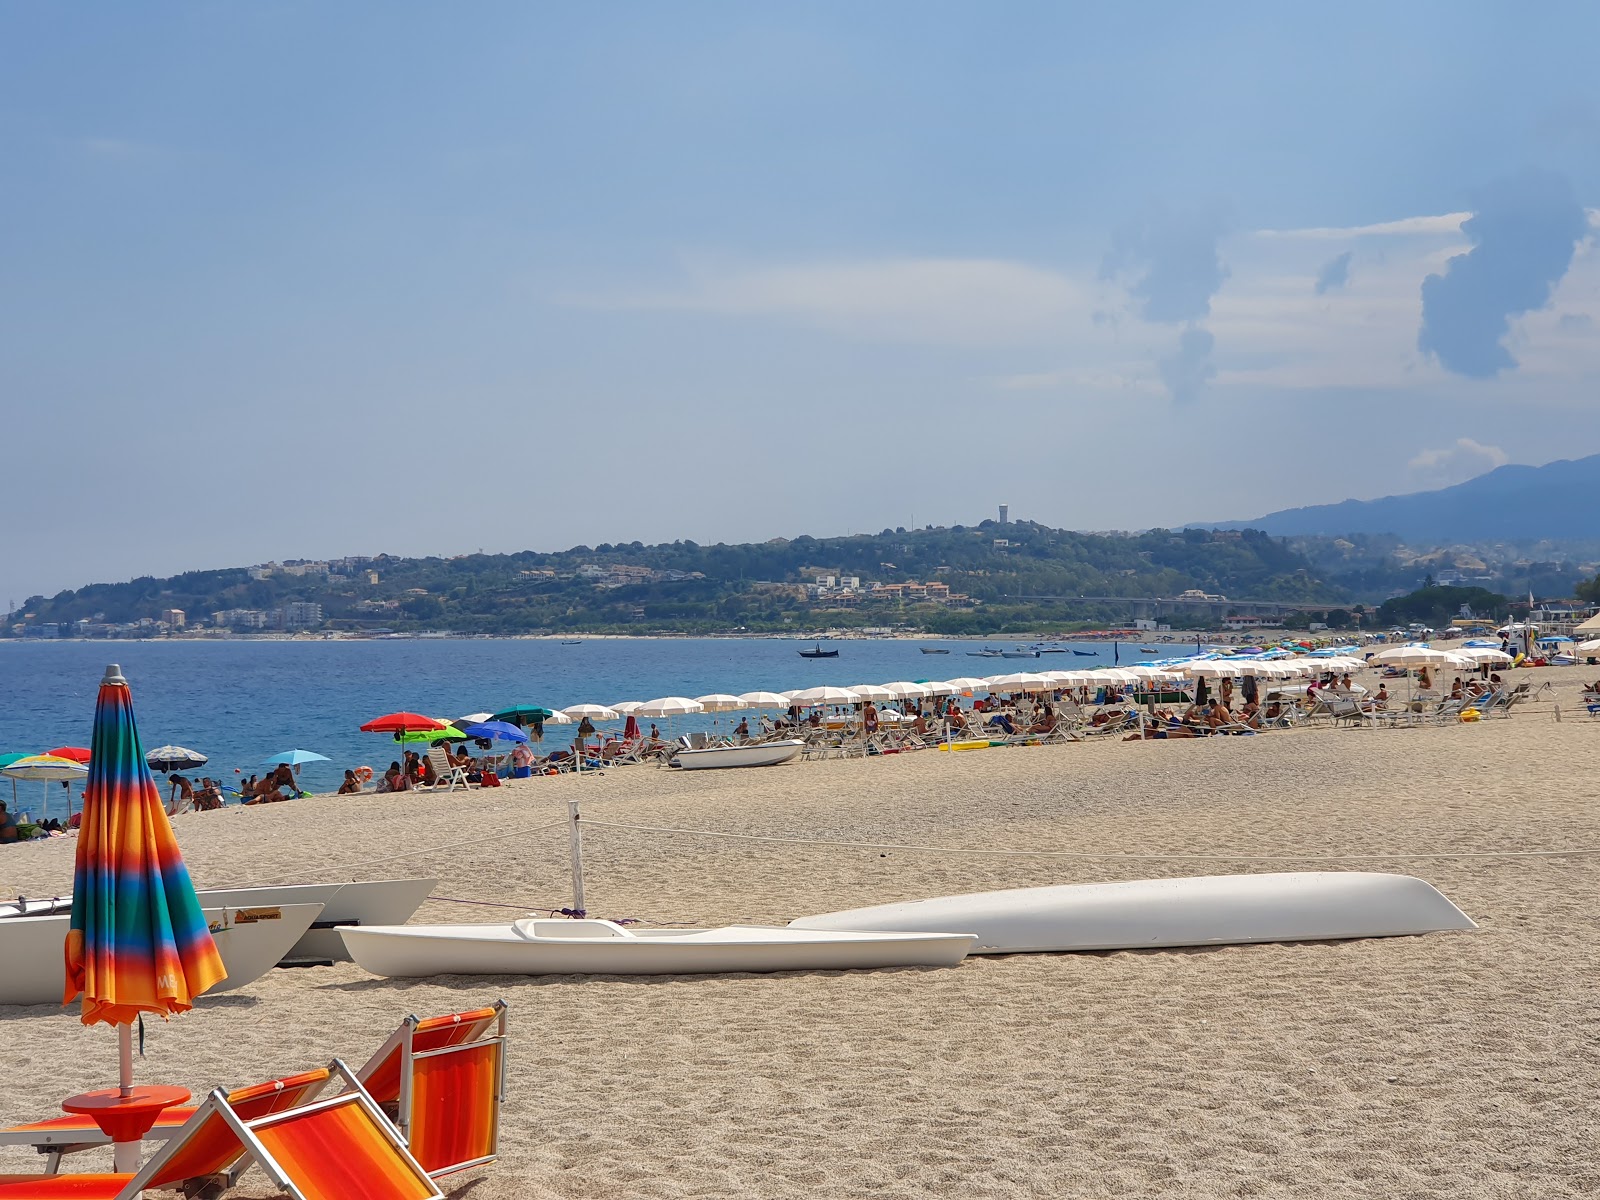 Foto af Montepaone Lido Stranden - populært sted blandt afslapningskendere